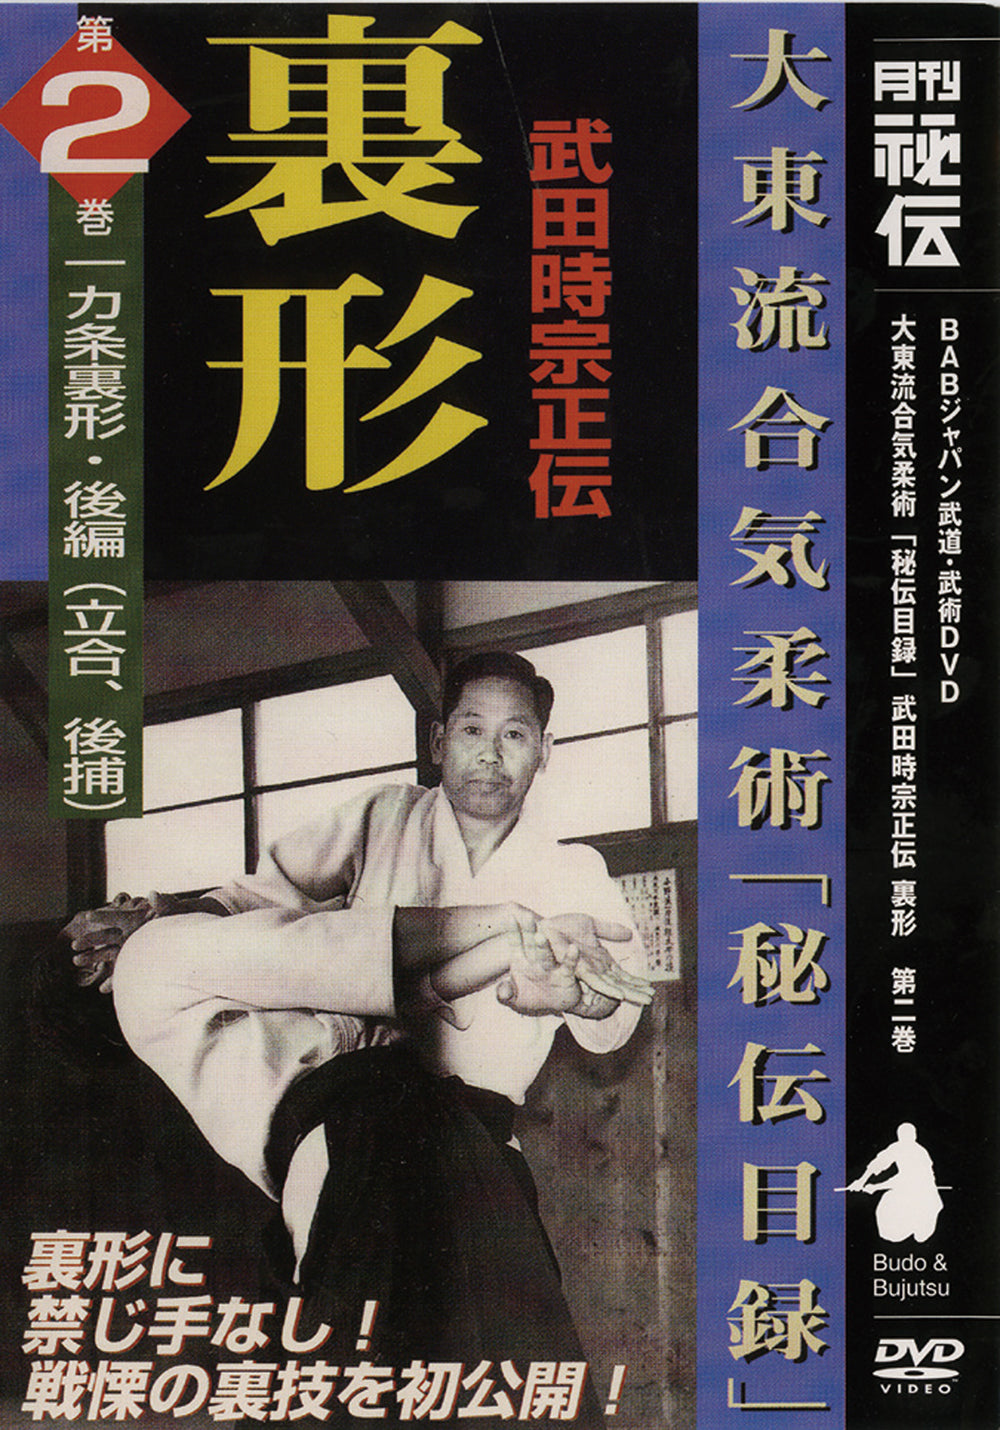 Daito Ryu Aikijujutsu: Ikkajo Ura Techniques DVD 2